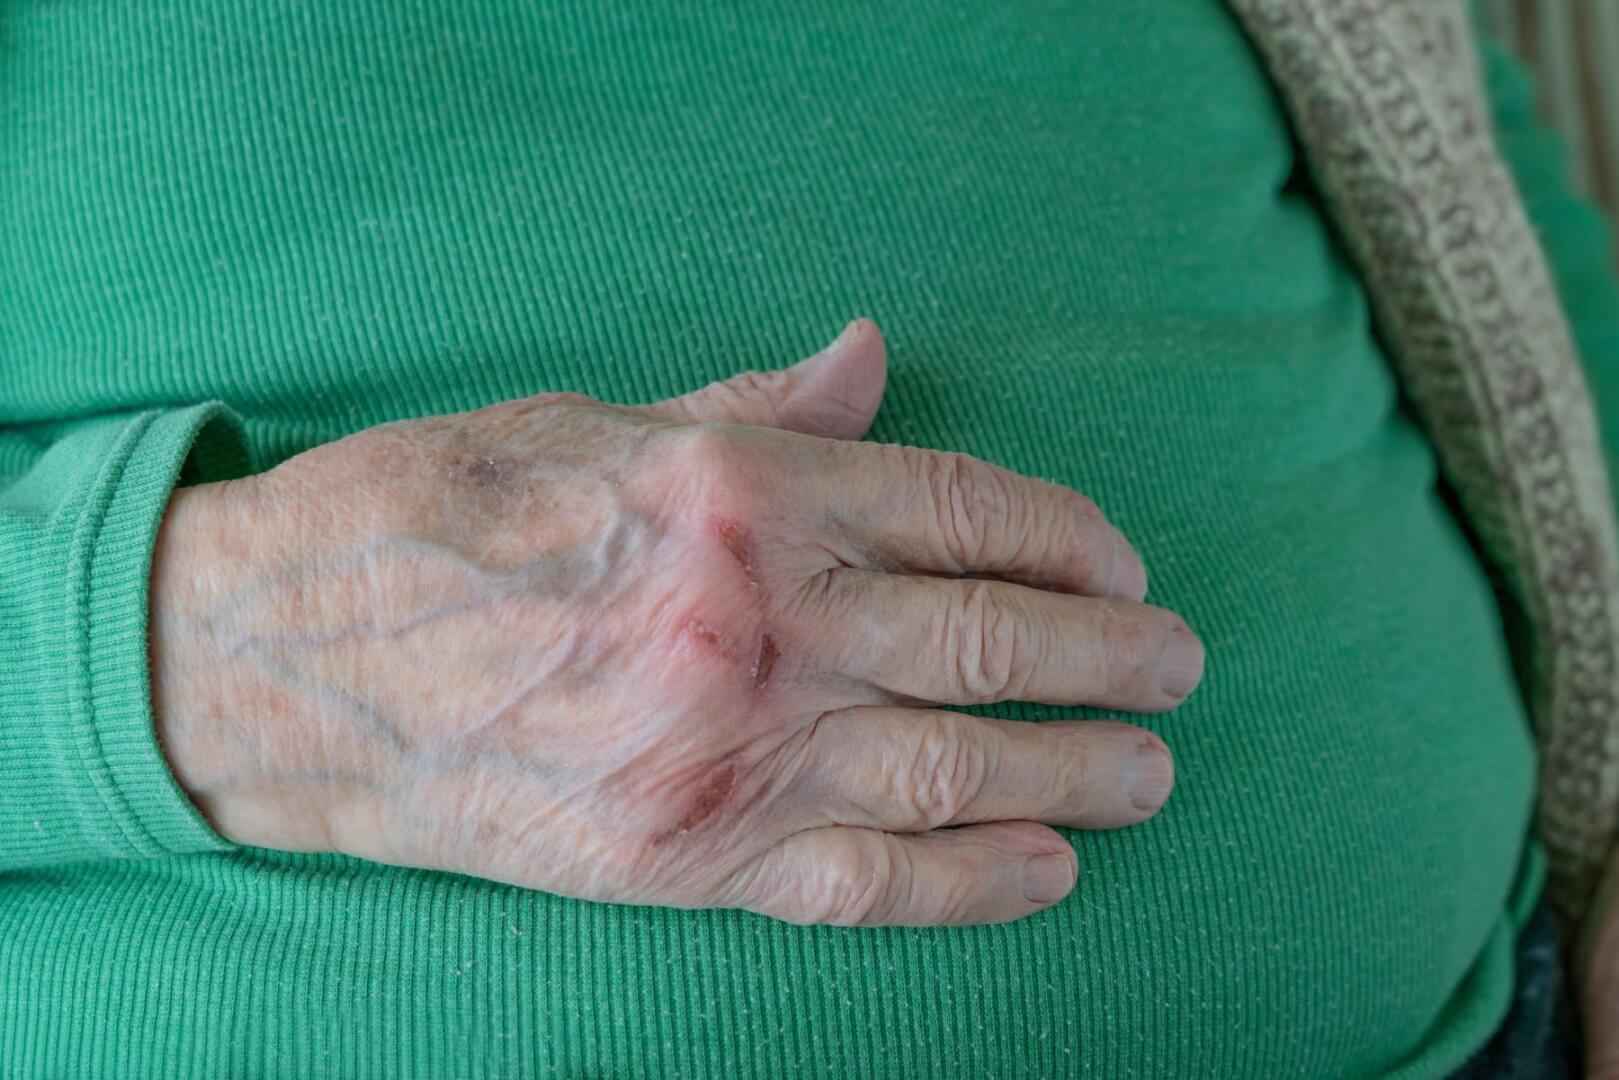 Un plano corto de una mano de un anciano con una cicatriz.